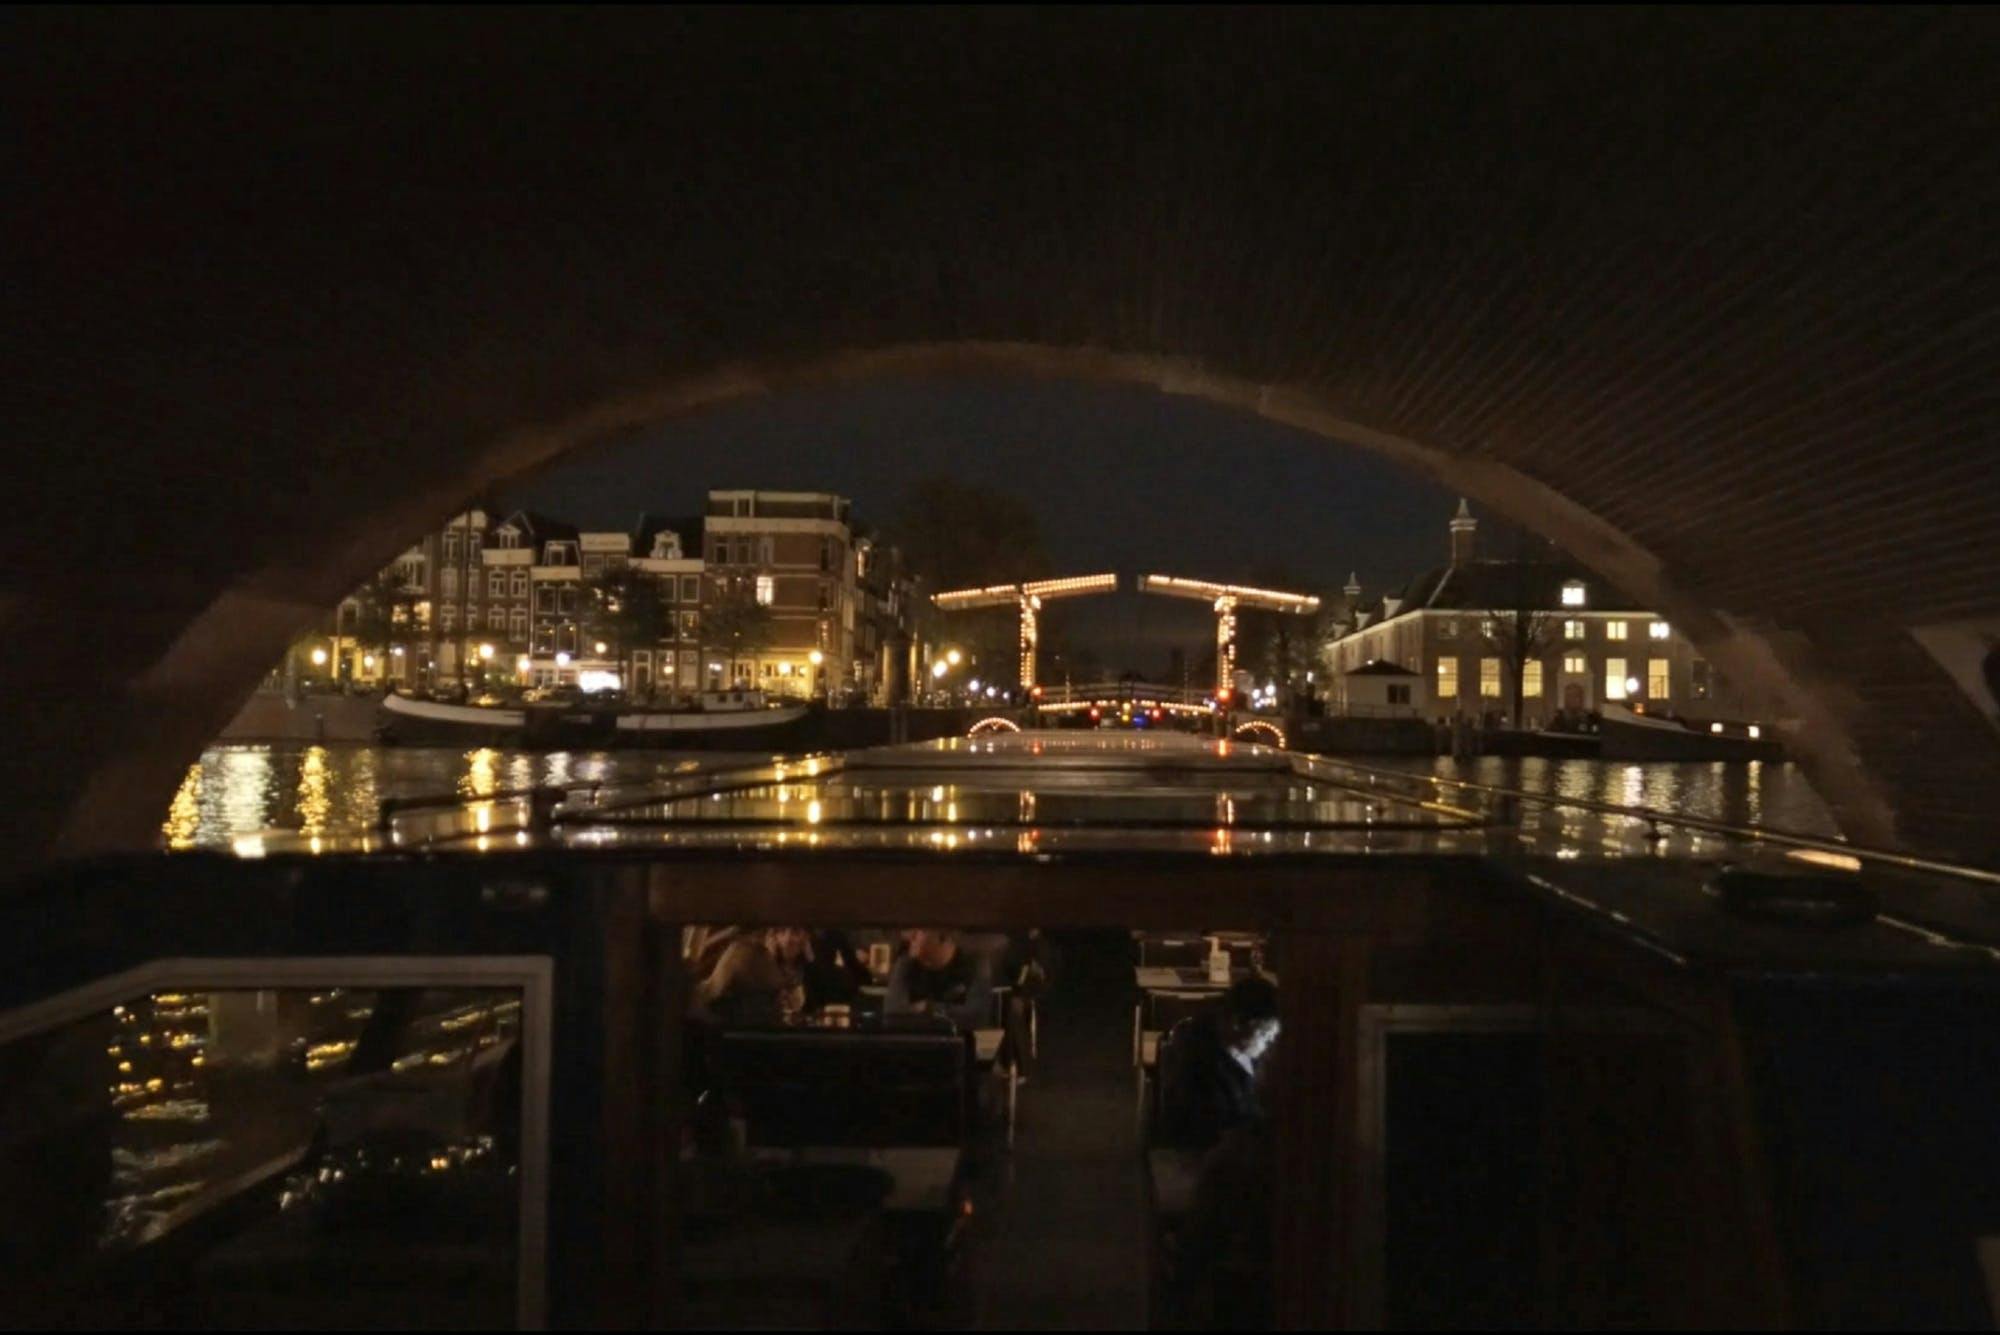 Crucero nocturno por los canales de Ámsterdam con aperitivo